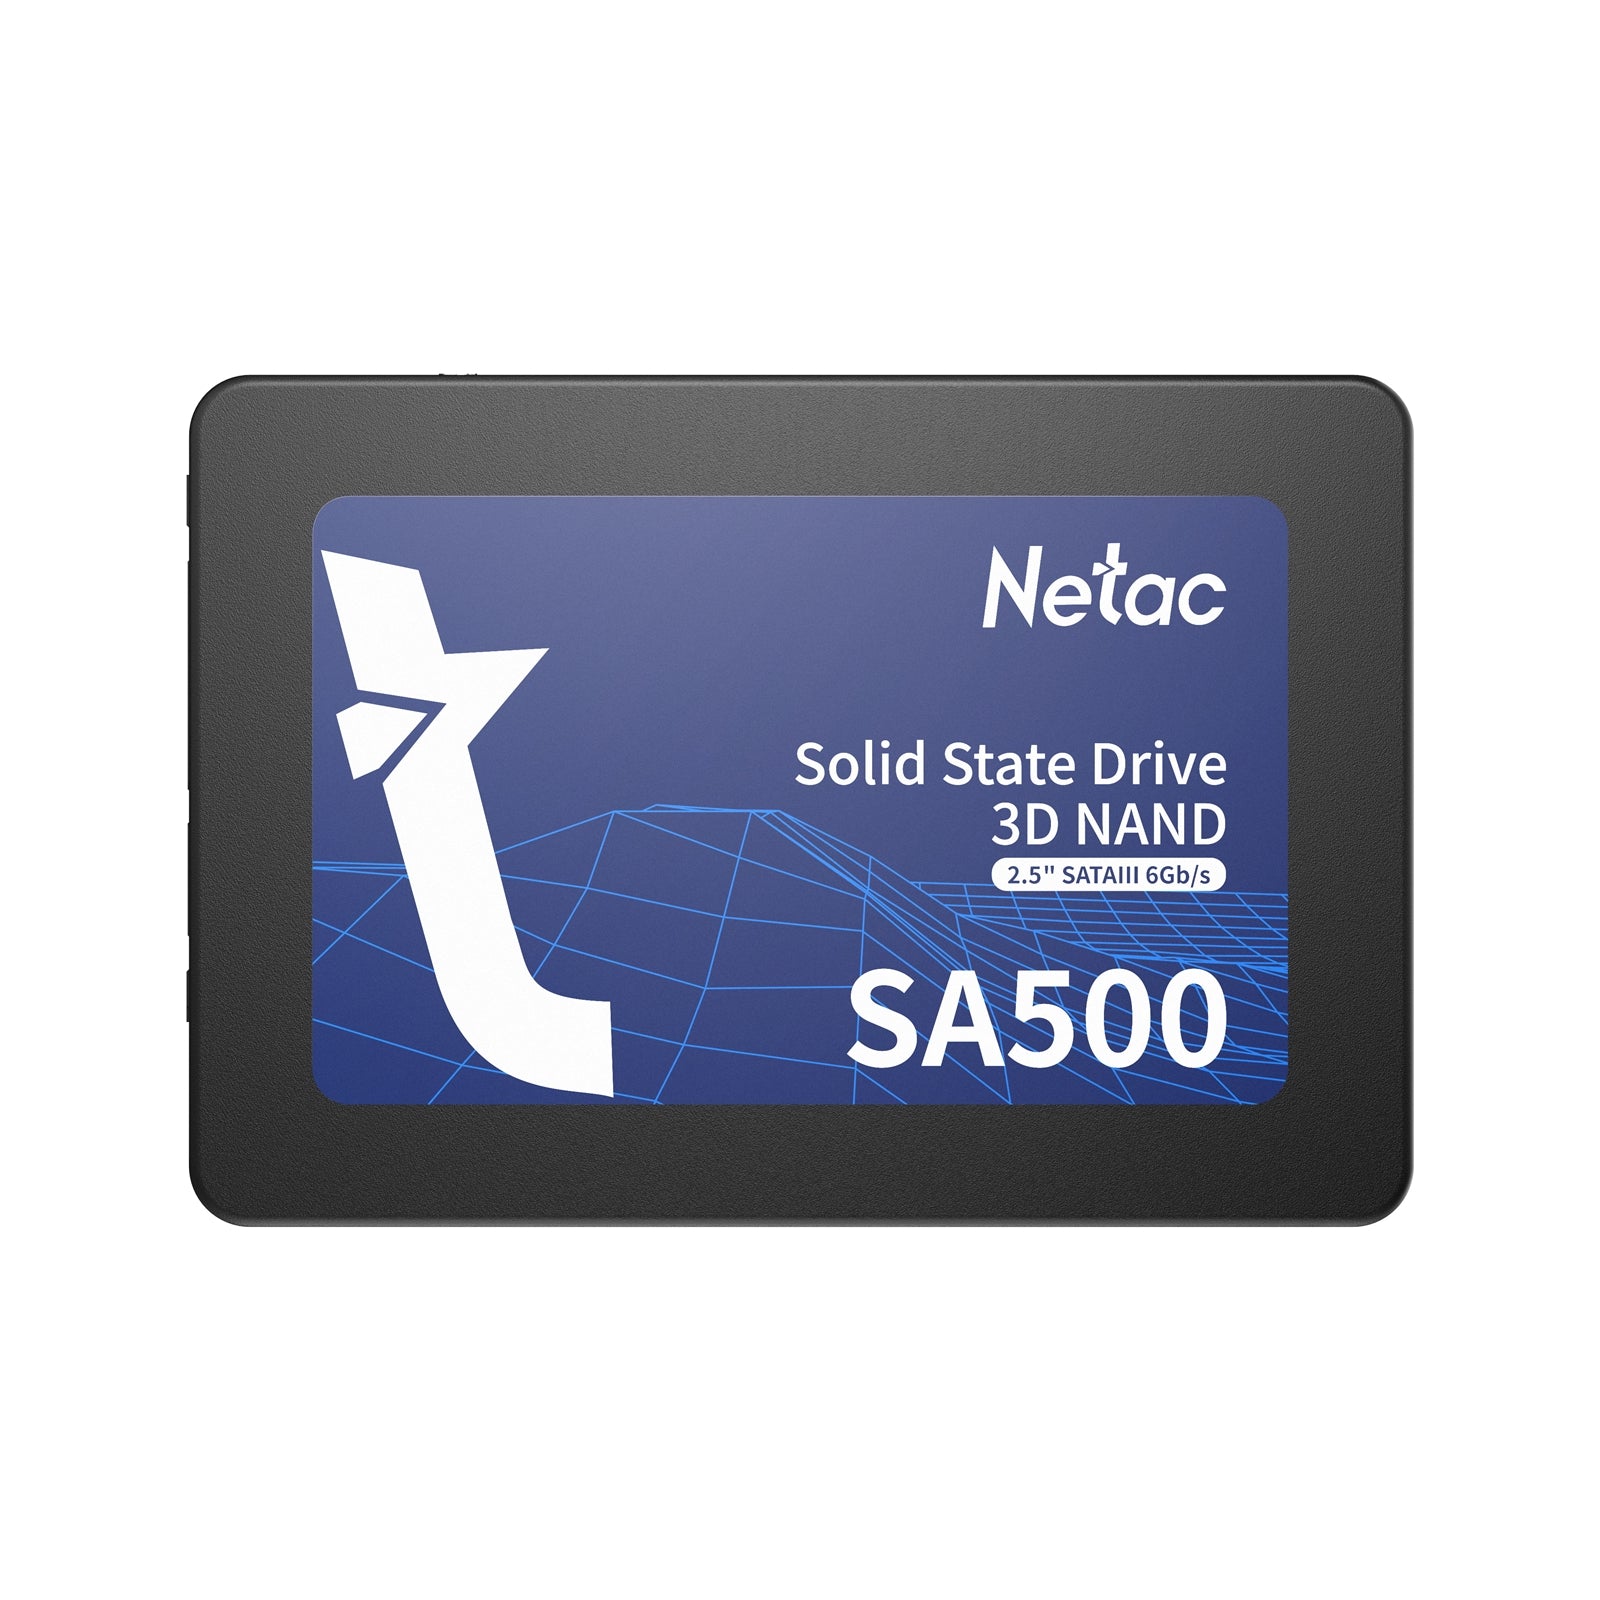 Netac SA500 256GB 2.5